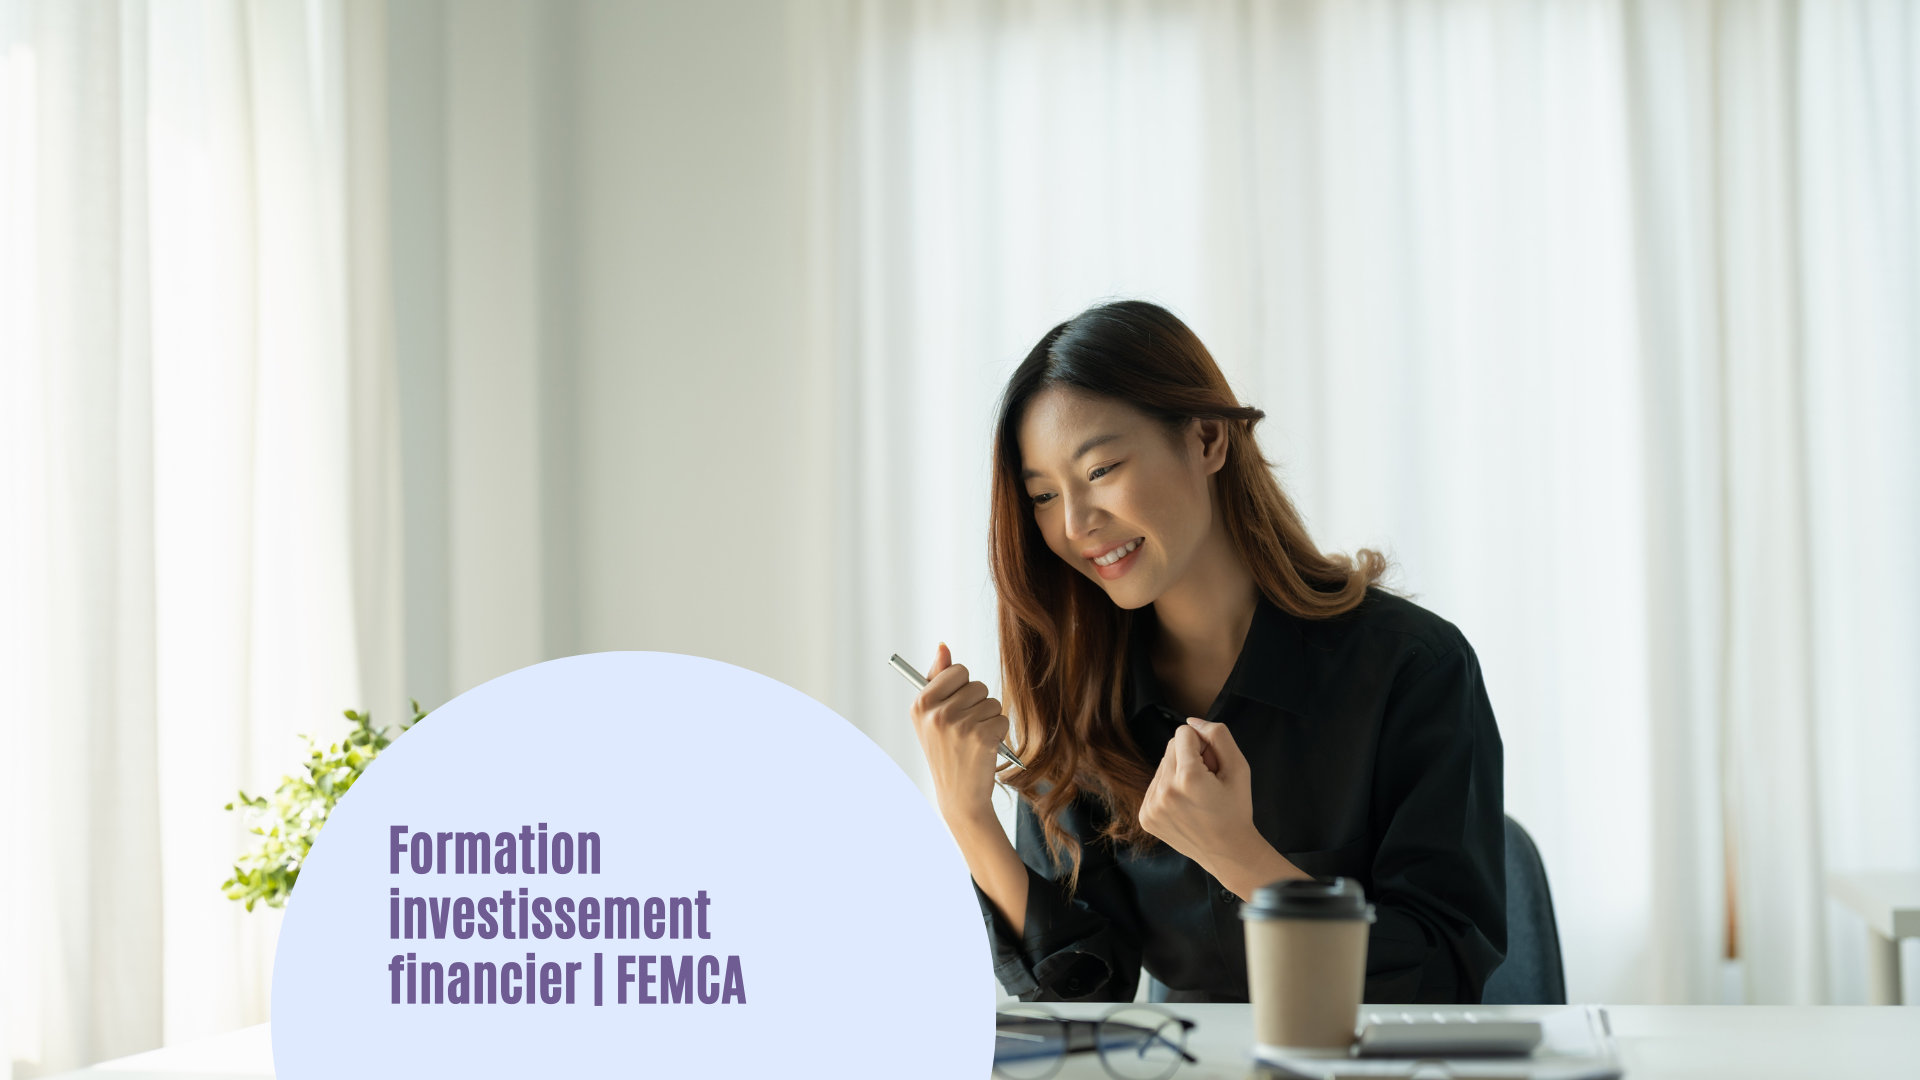 Formation investissement financier | FEMCA